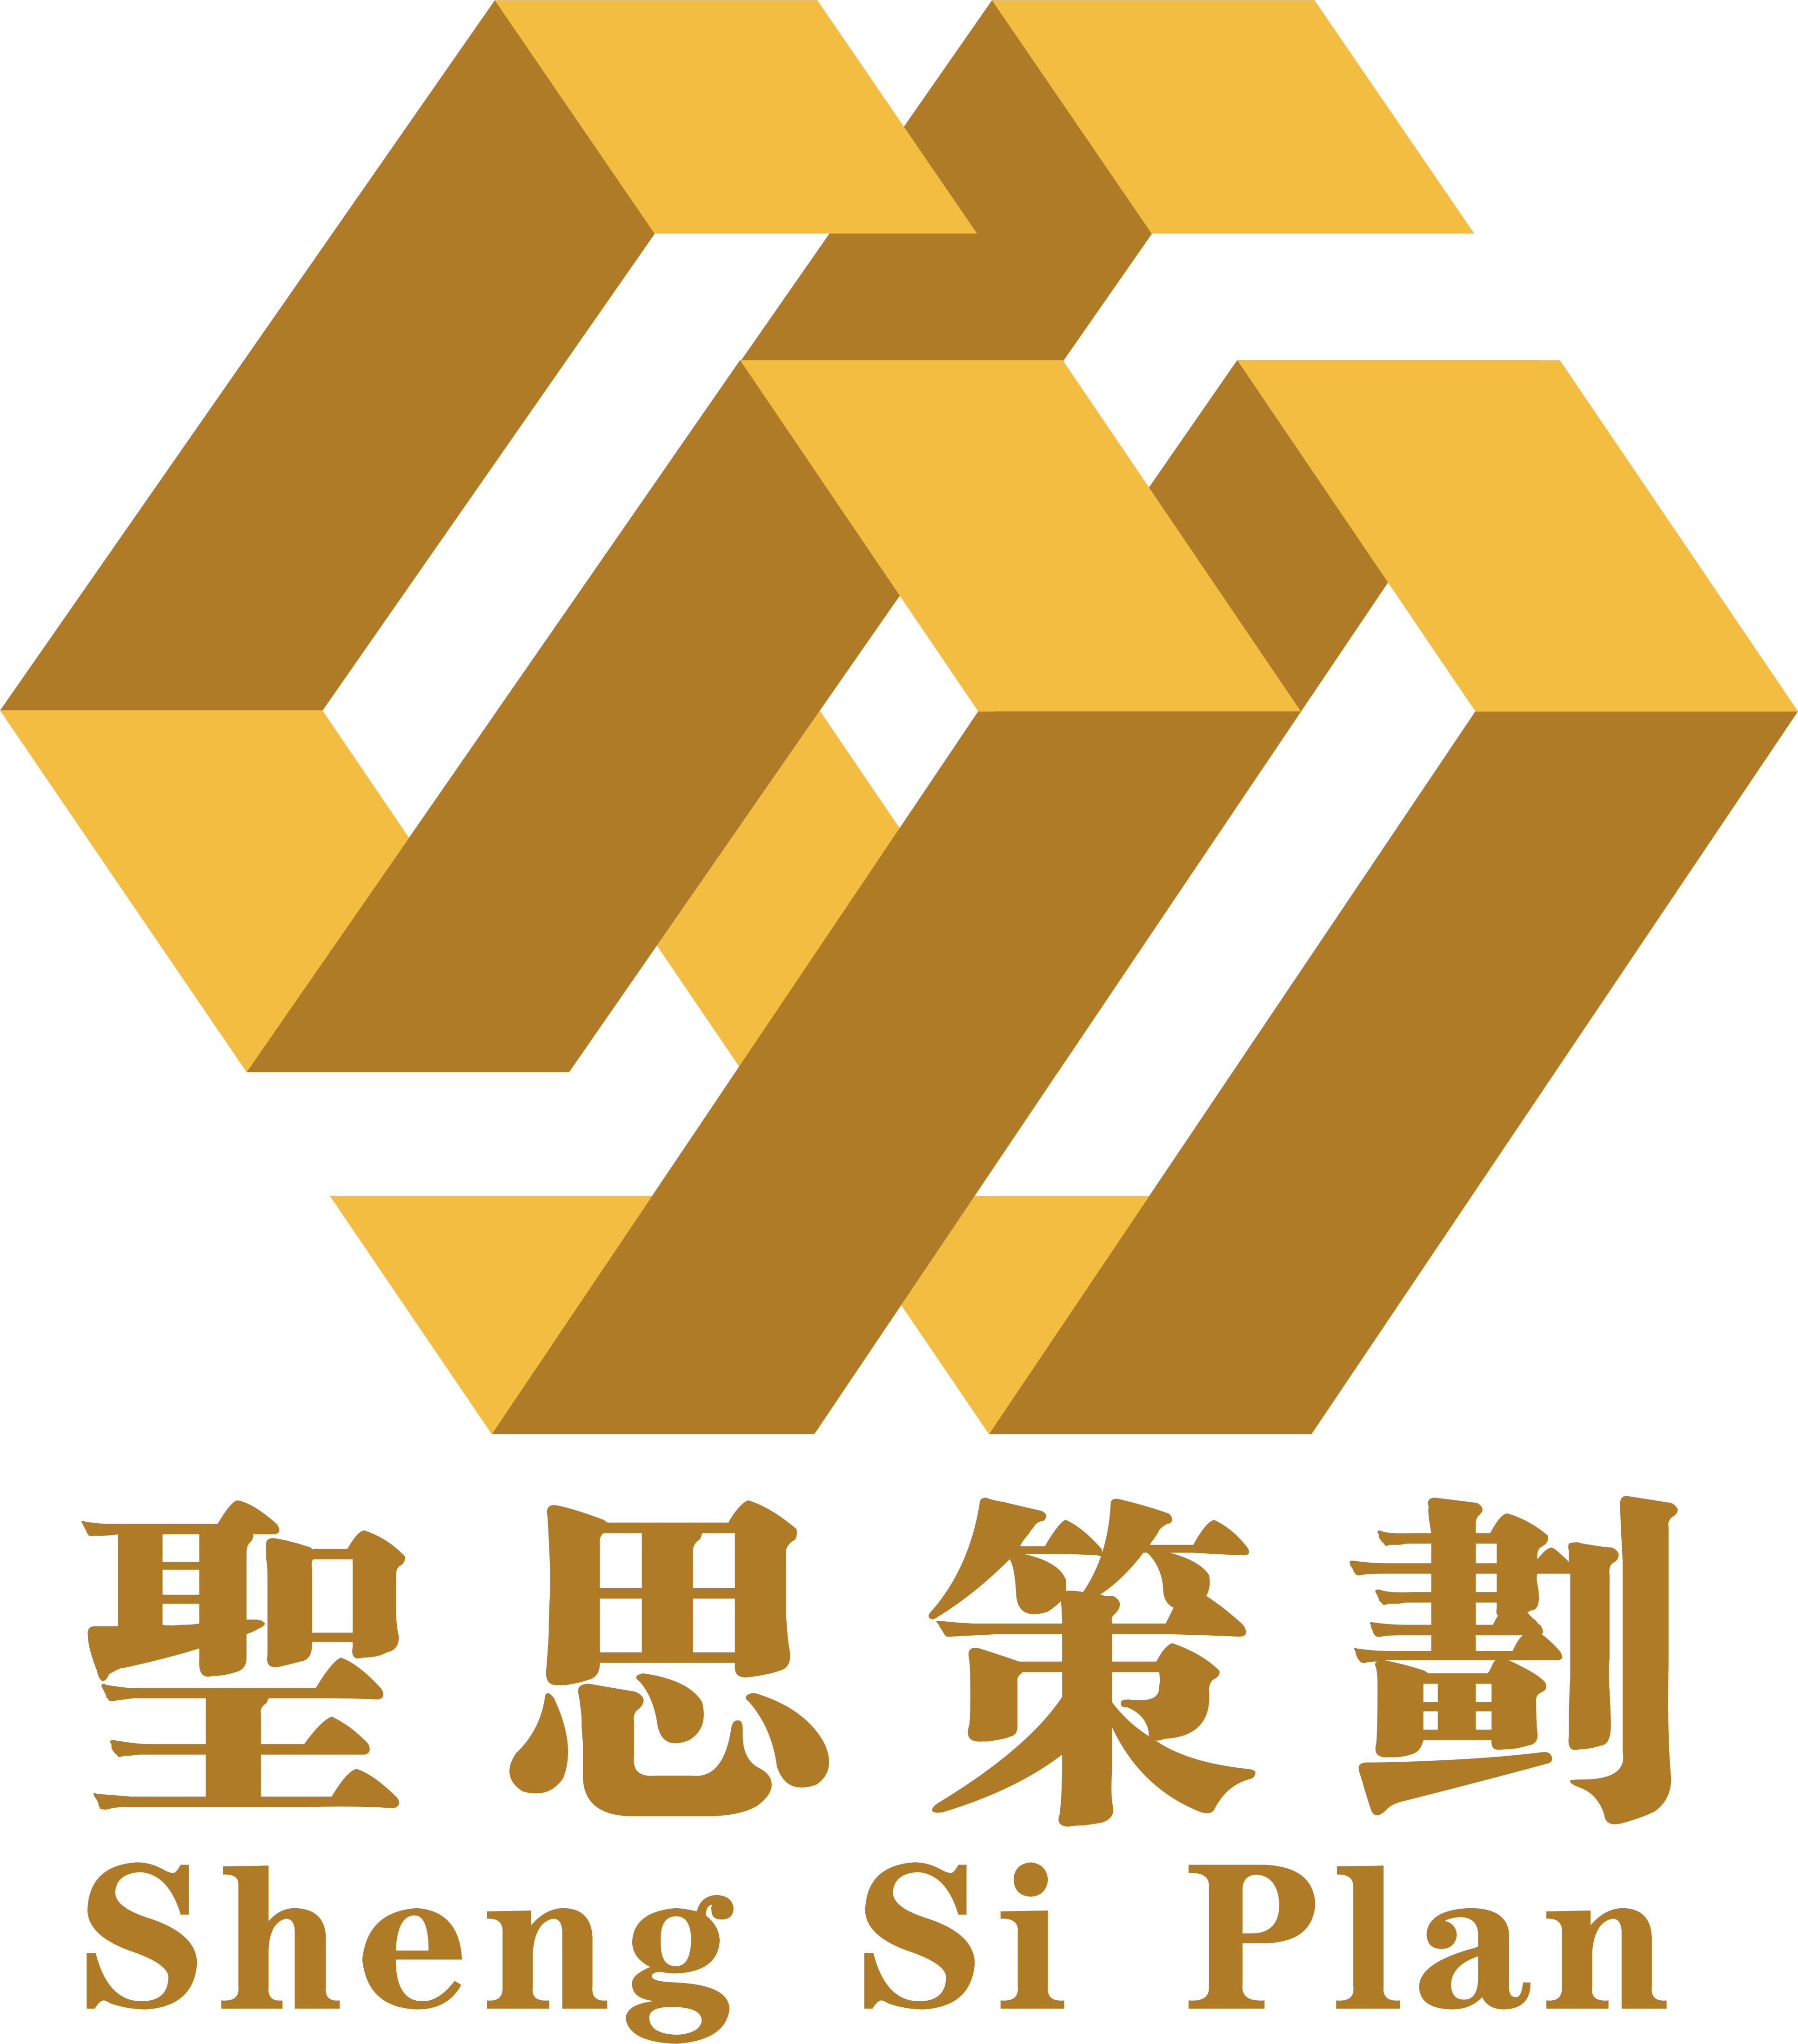 中国工程咨询协会电子信息工程专业委员会启动